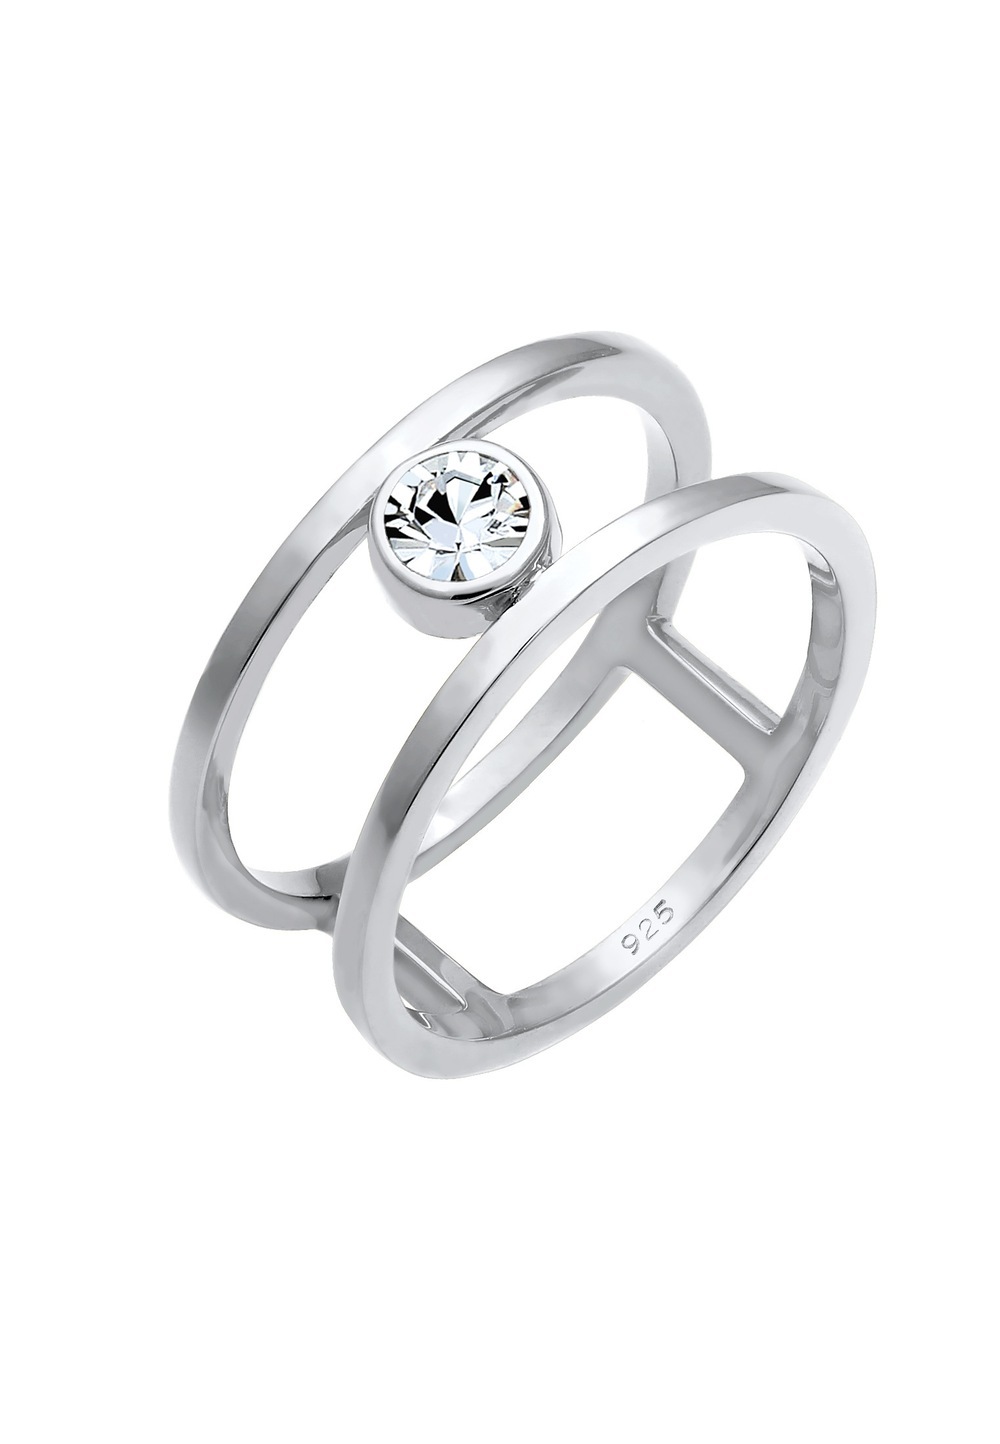 Elli PREMIUM Elli PREMIUM Elli PREMIUM Ring Dames Dubbele Ring Solitaire Stralend met Kristallen in 925 Sterling Zilver Ringen